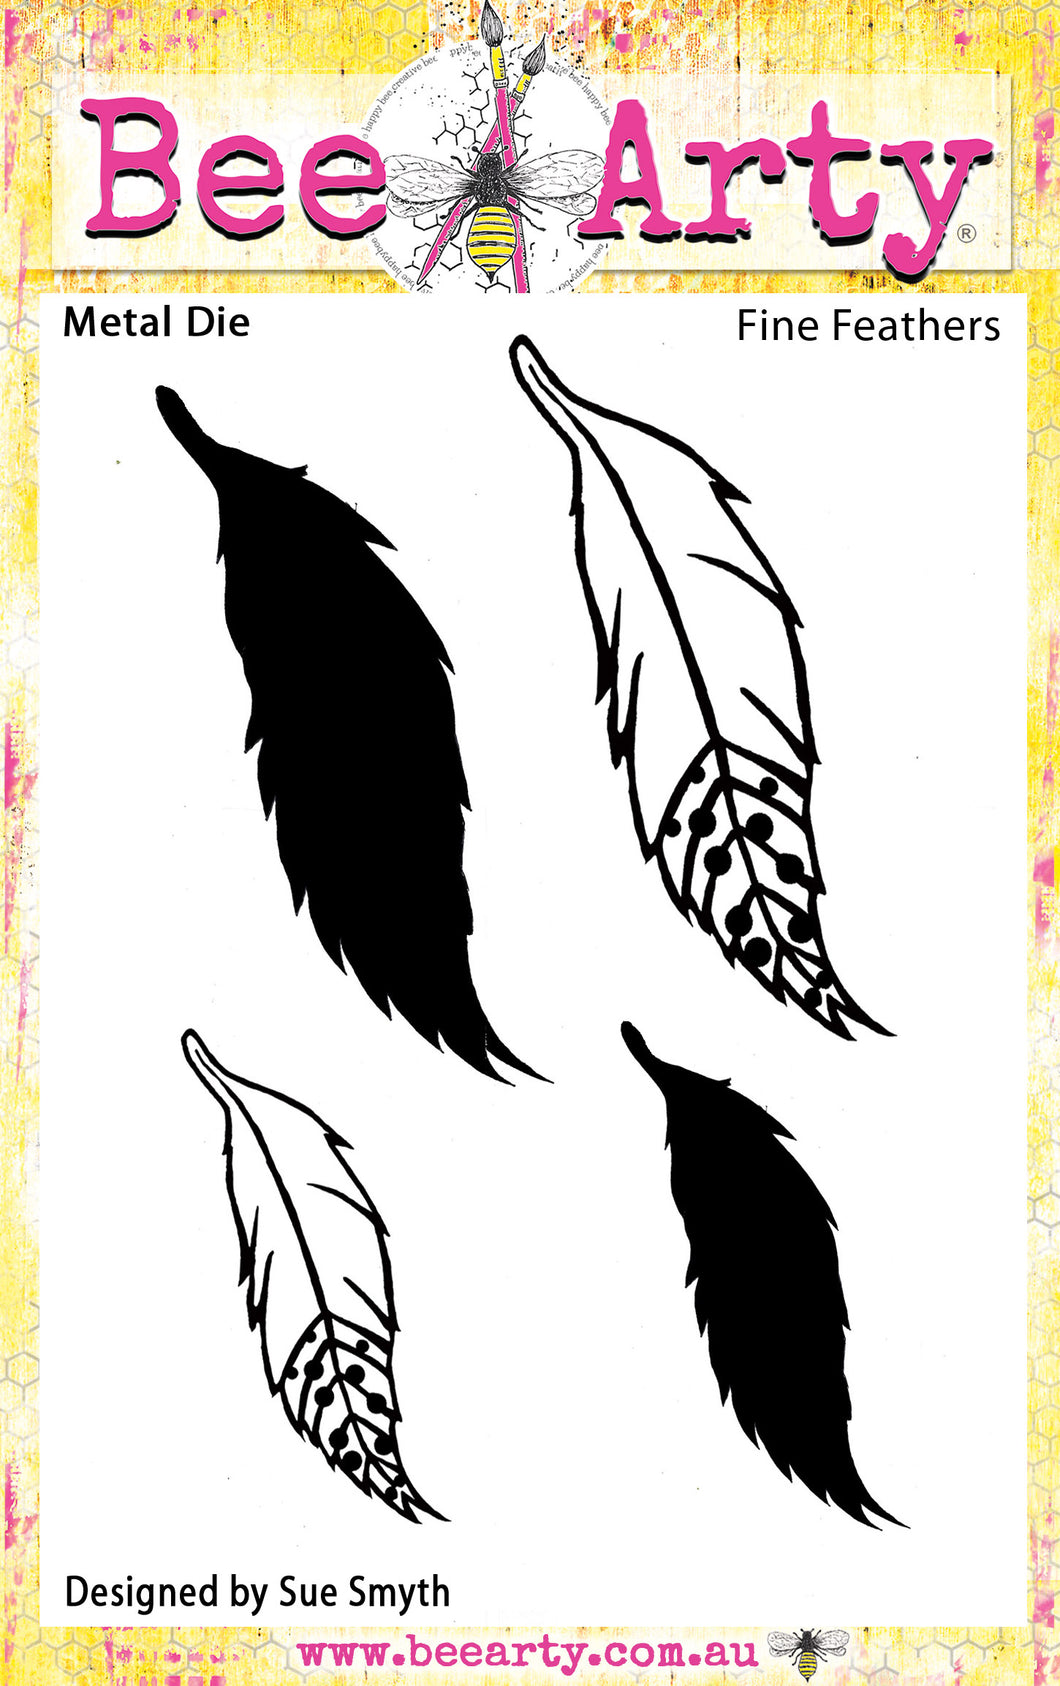 Fine Feathers - Metal Die